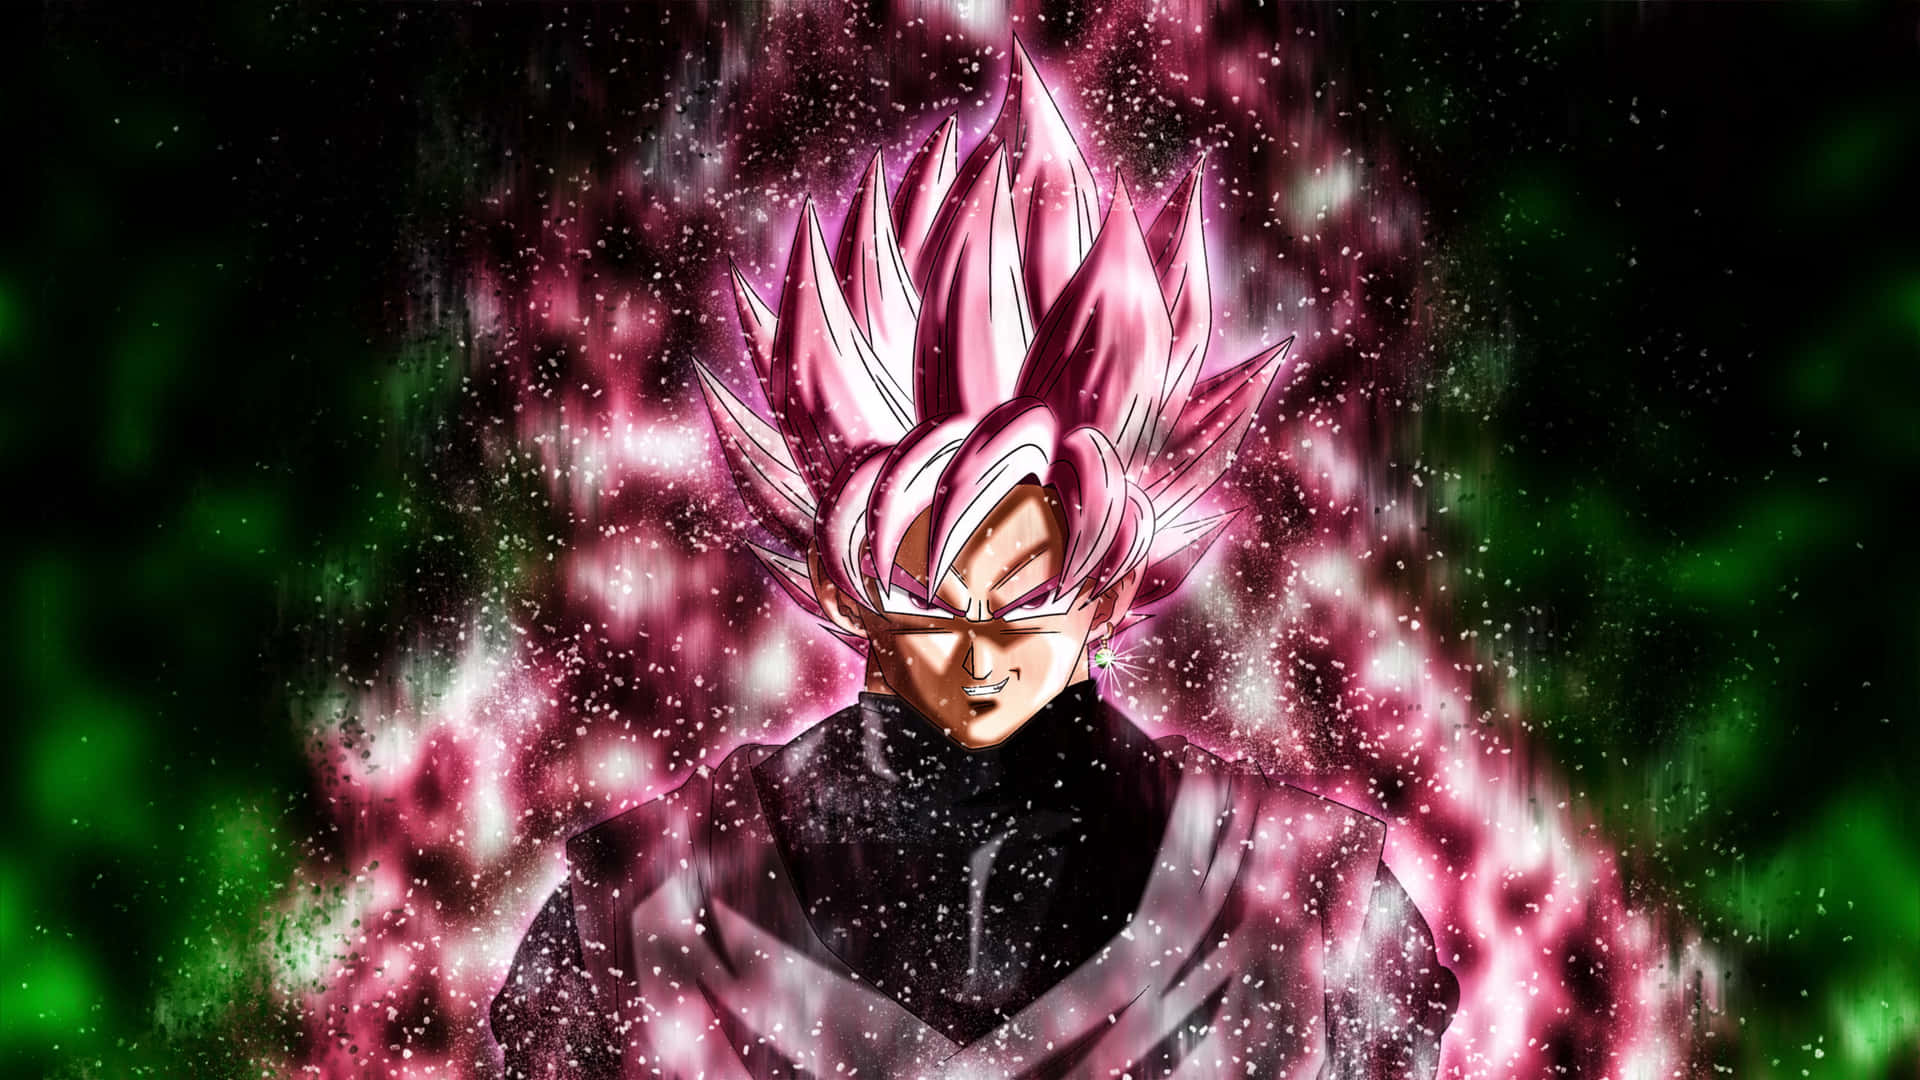 Super Saiyan Rose transforms Goku Black in Dragon Ball Super Wallpaper